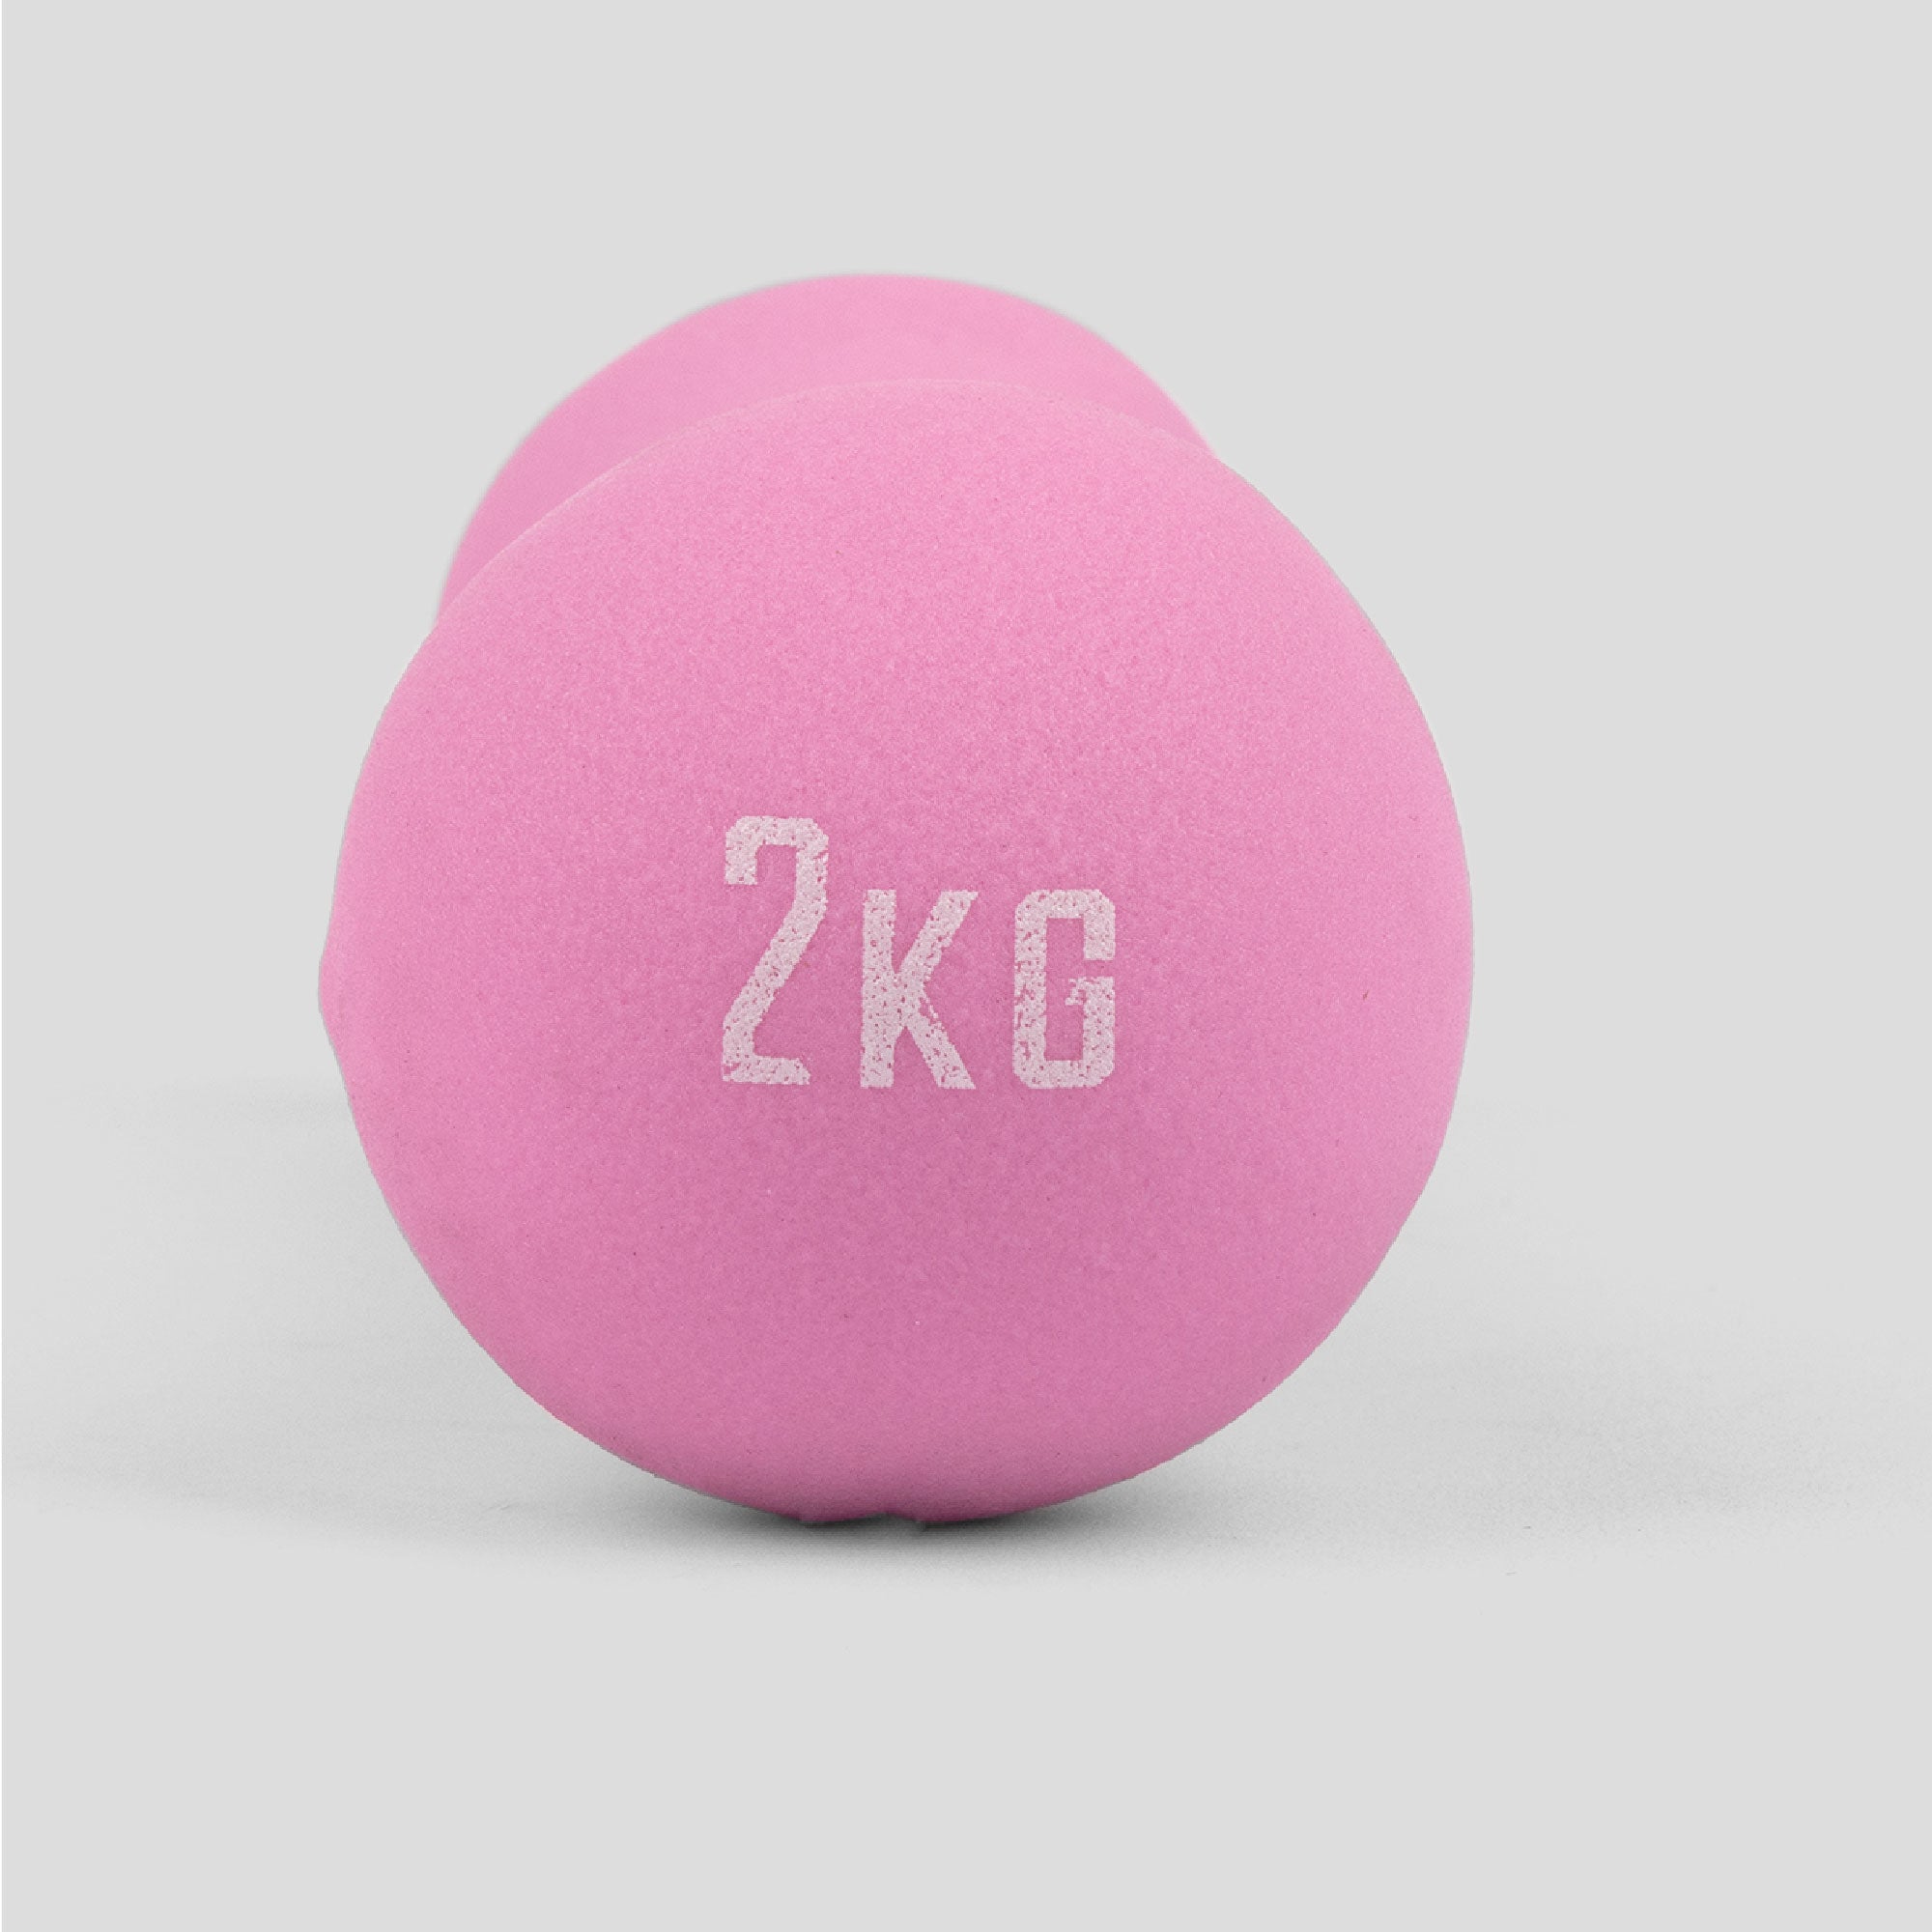 2kg Pink Neoprene Dumbbell - Single